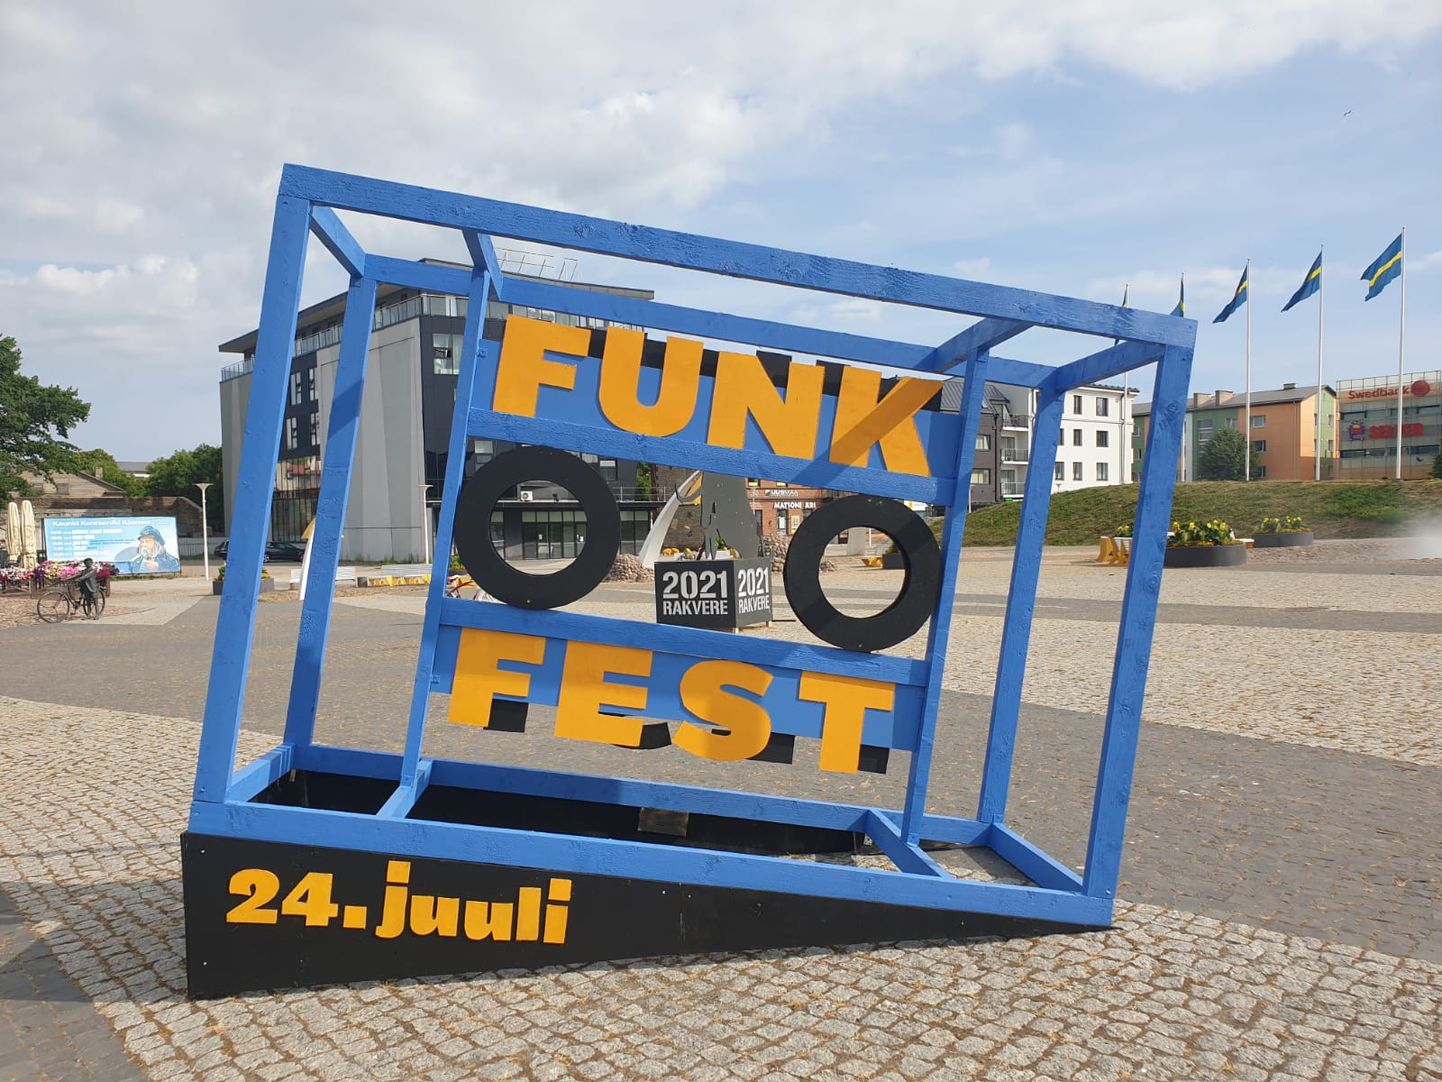 Funkfest Rakveres 24. juulil.